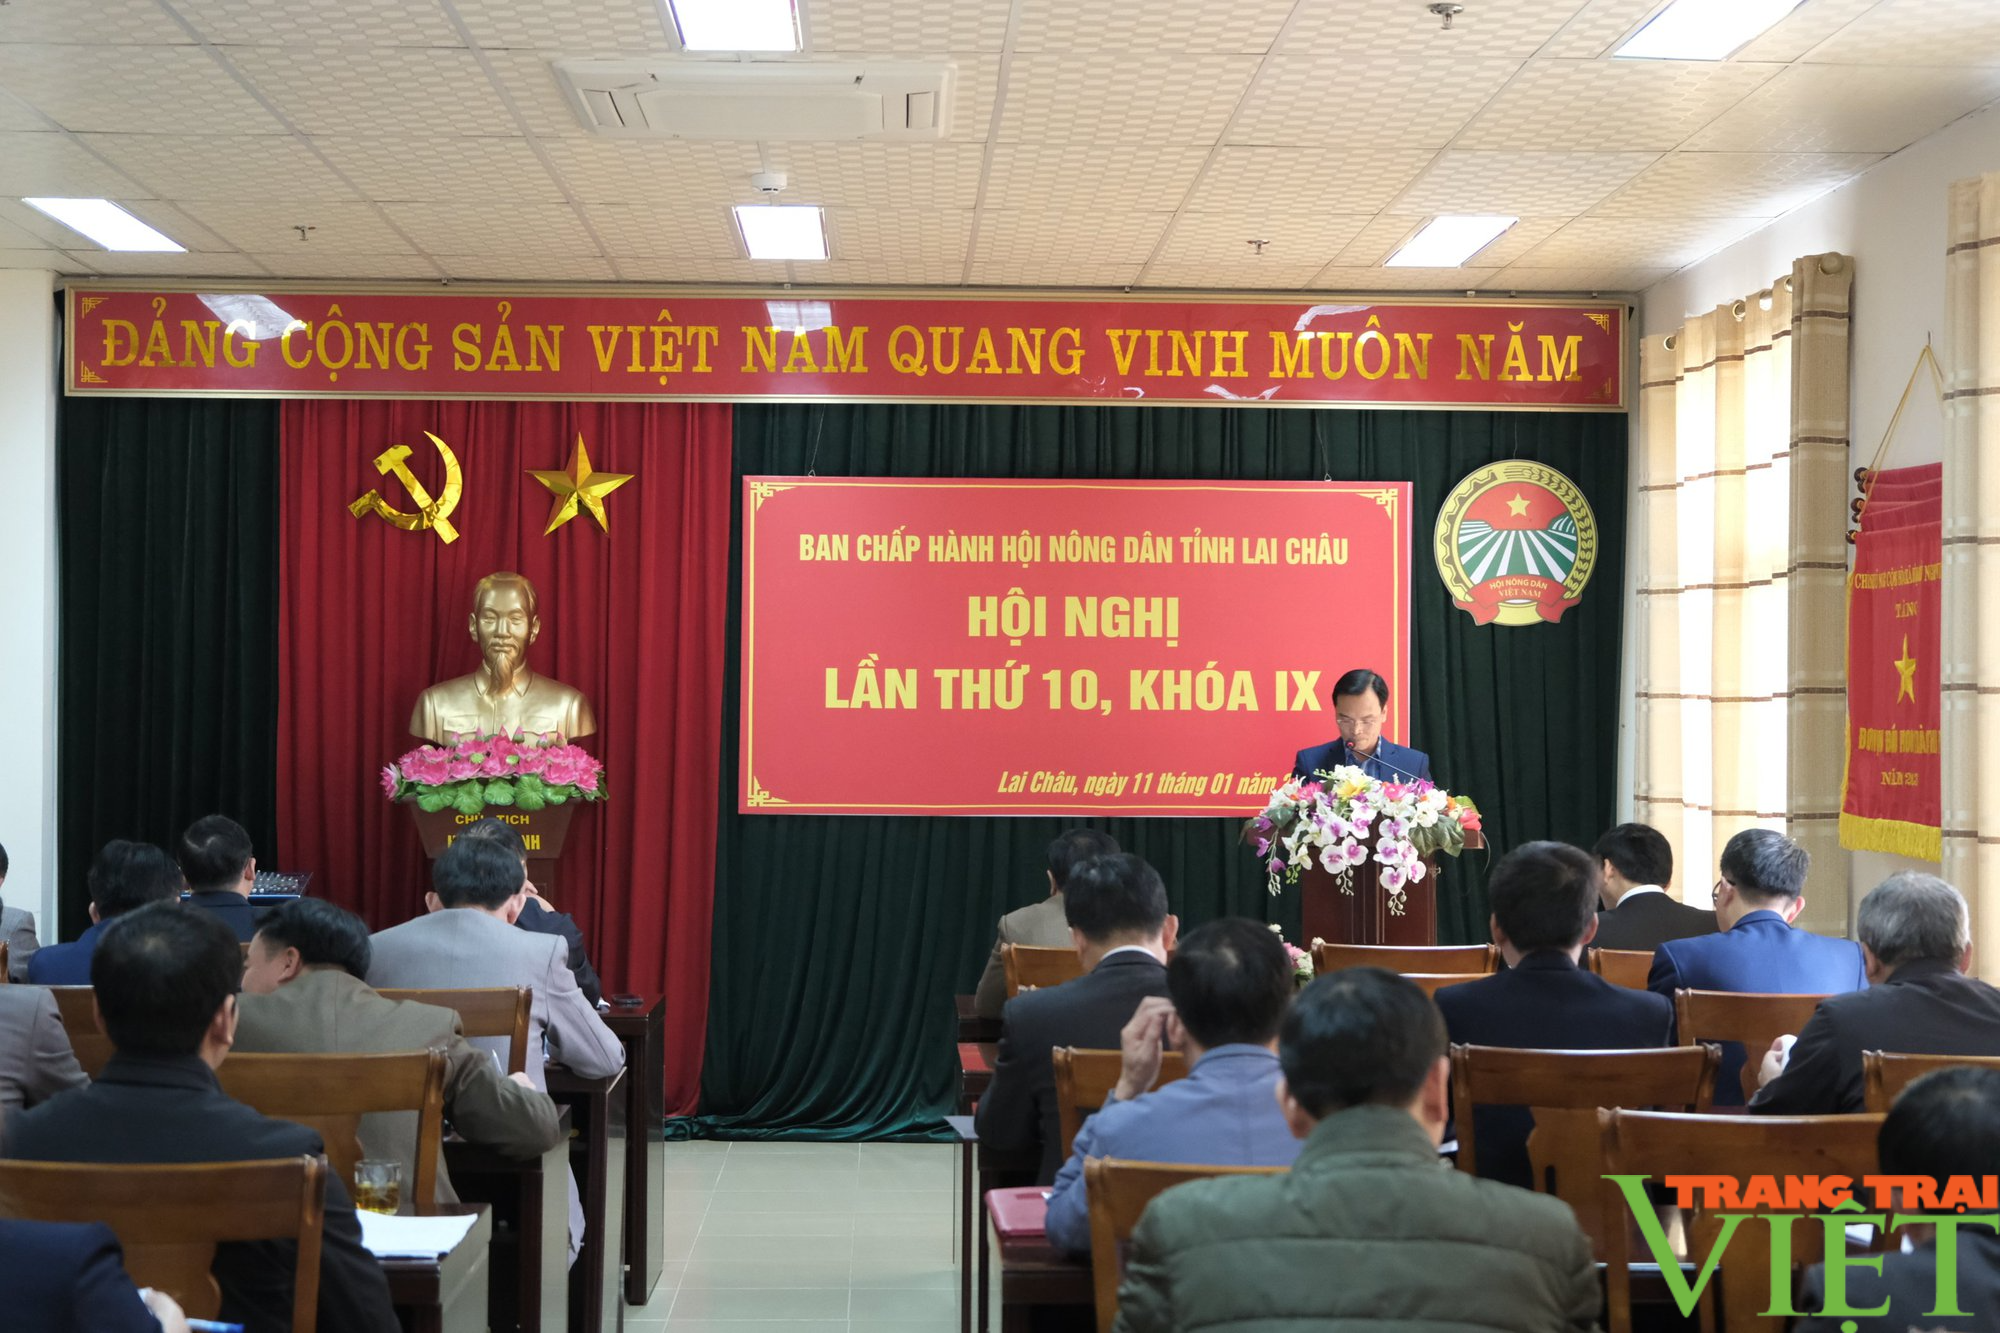 Hội nghị Ban Chấp hành Hội Nông dân tỉnh Lai Châu lần thứ 10 khóa IX - Ảnh 1.